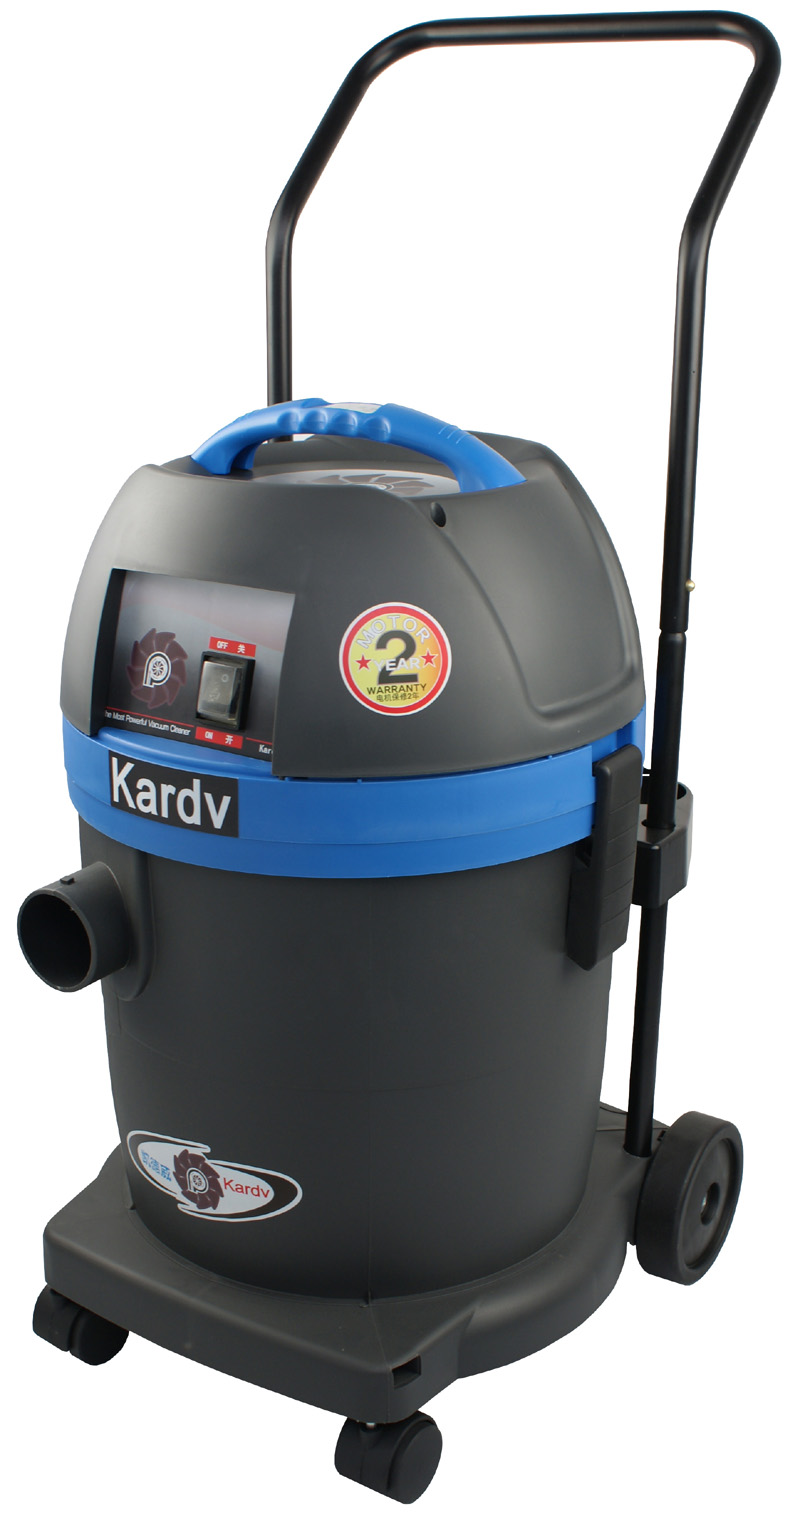 实验室专用吸尘器 凯德威无尘室吸尘器DL-1232W